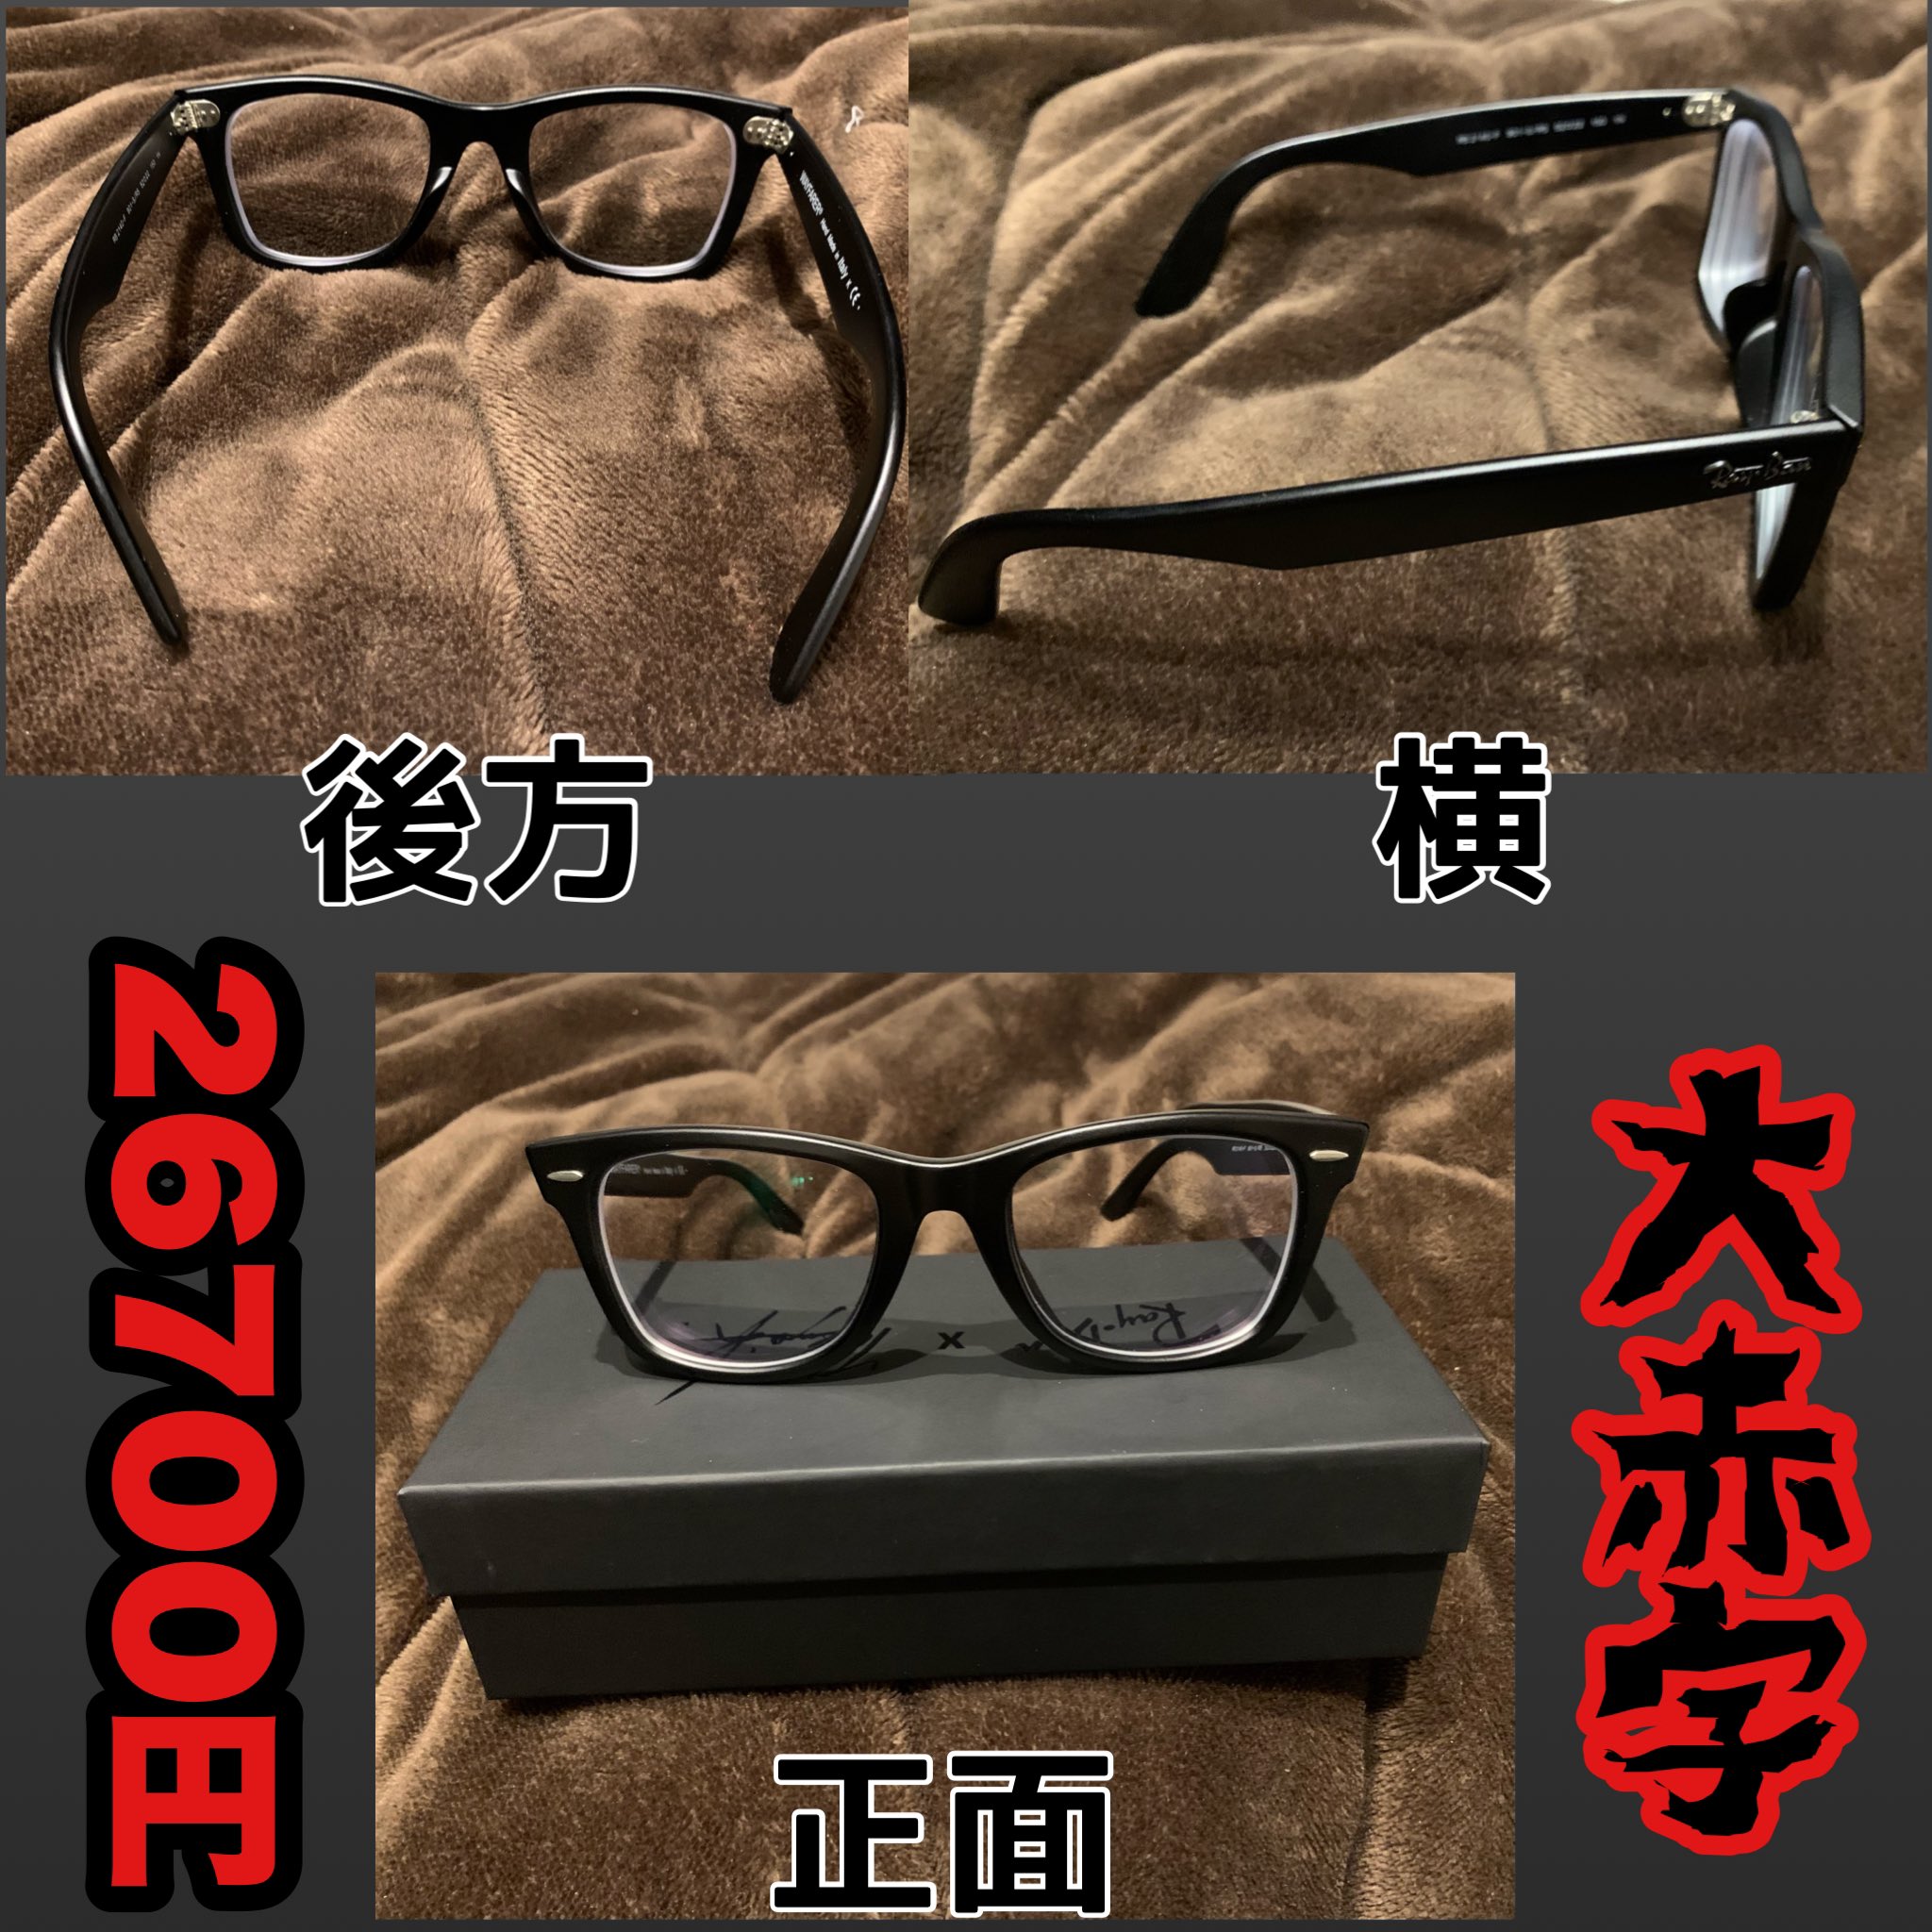 𝗔ͼ𝗘𝘀兵長 新品 Newメガネ買いました 何と お値段2万6700円 痛てｪ ちなみにコレ元々サングラスらしいです キムタクさんが付けてたって店員さんが 言ってて一目惚れして買いました 前のメガネと同じのが良かったので 赤字やけど